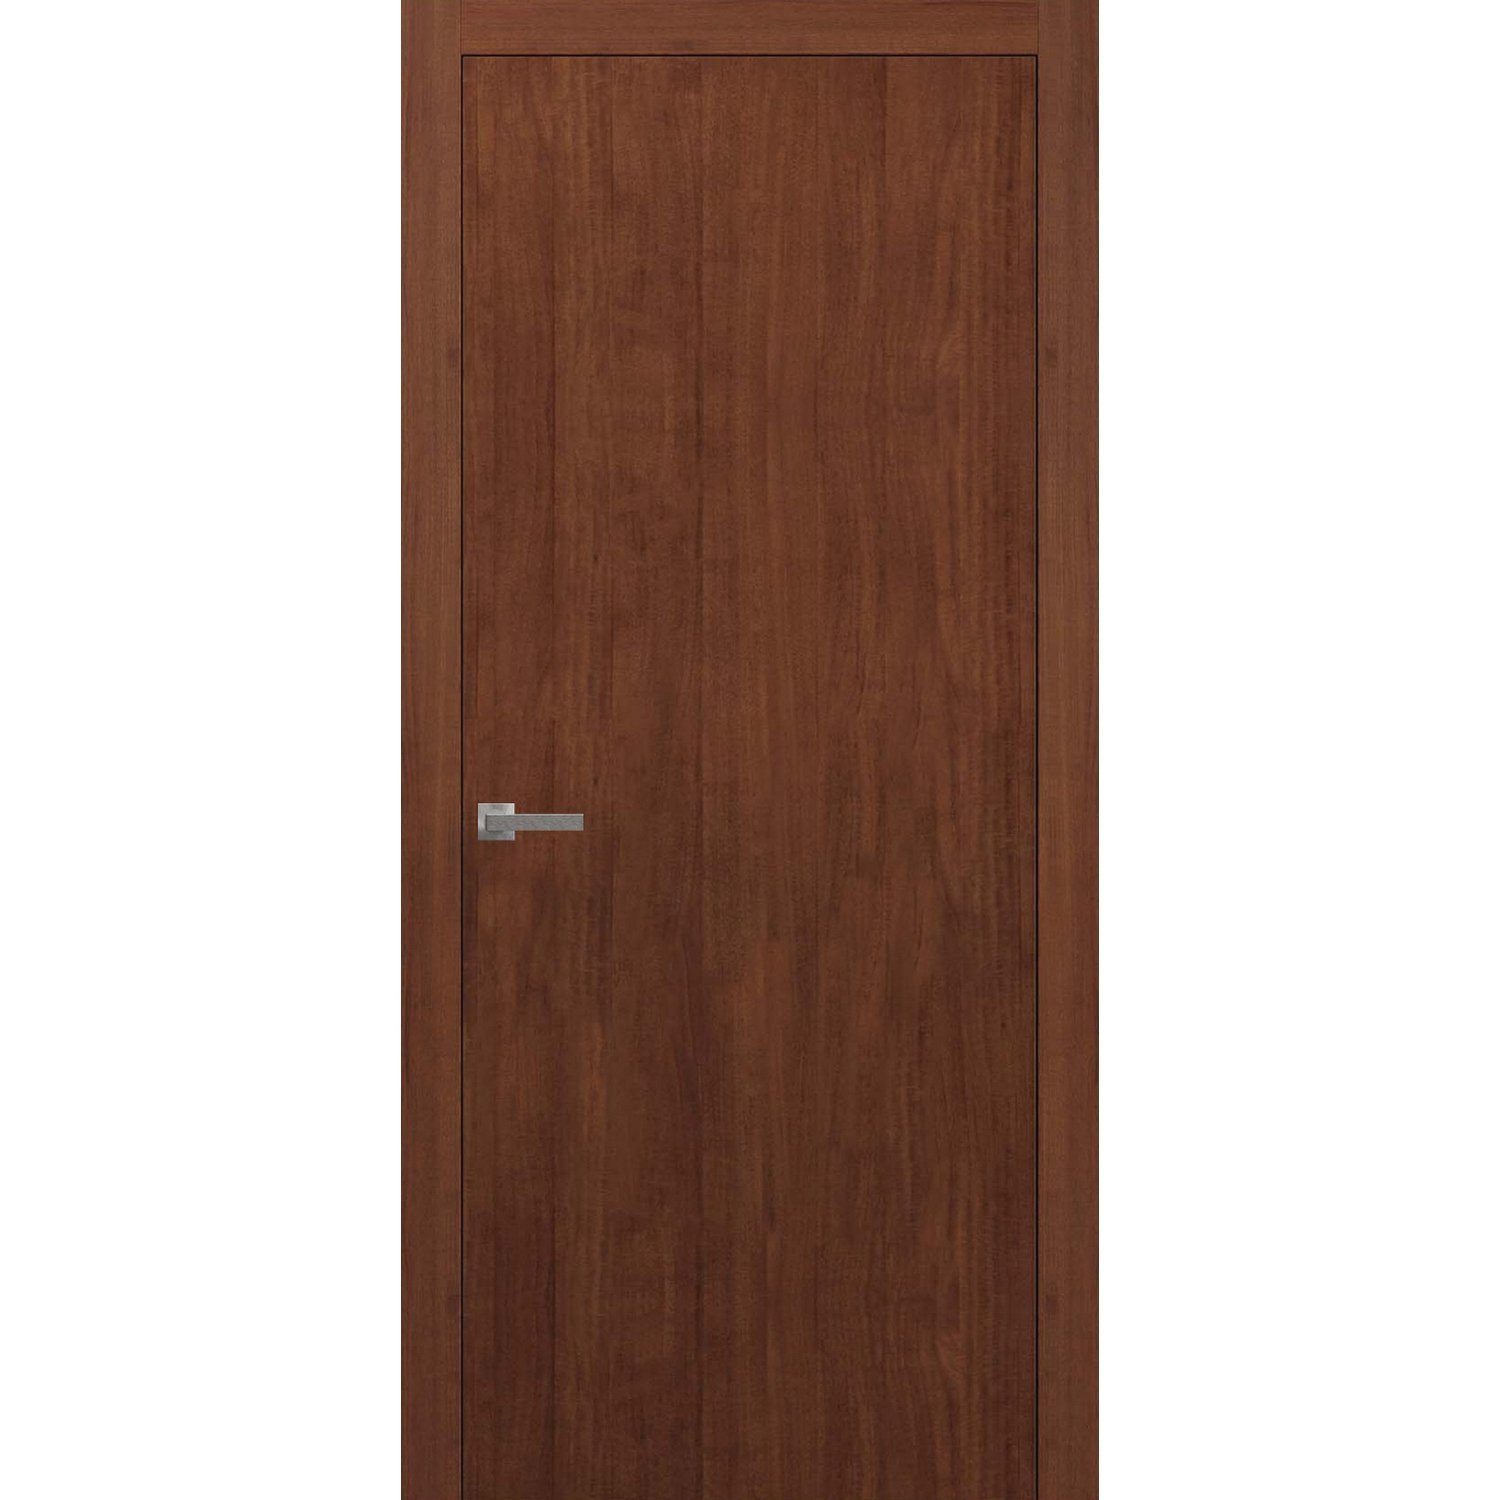 Solid Wood Bedroom Doors Beautiful Planum 0020 Interior Modern Flush solid Pre Hung Door Wenge